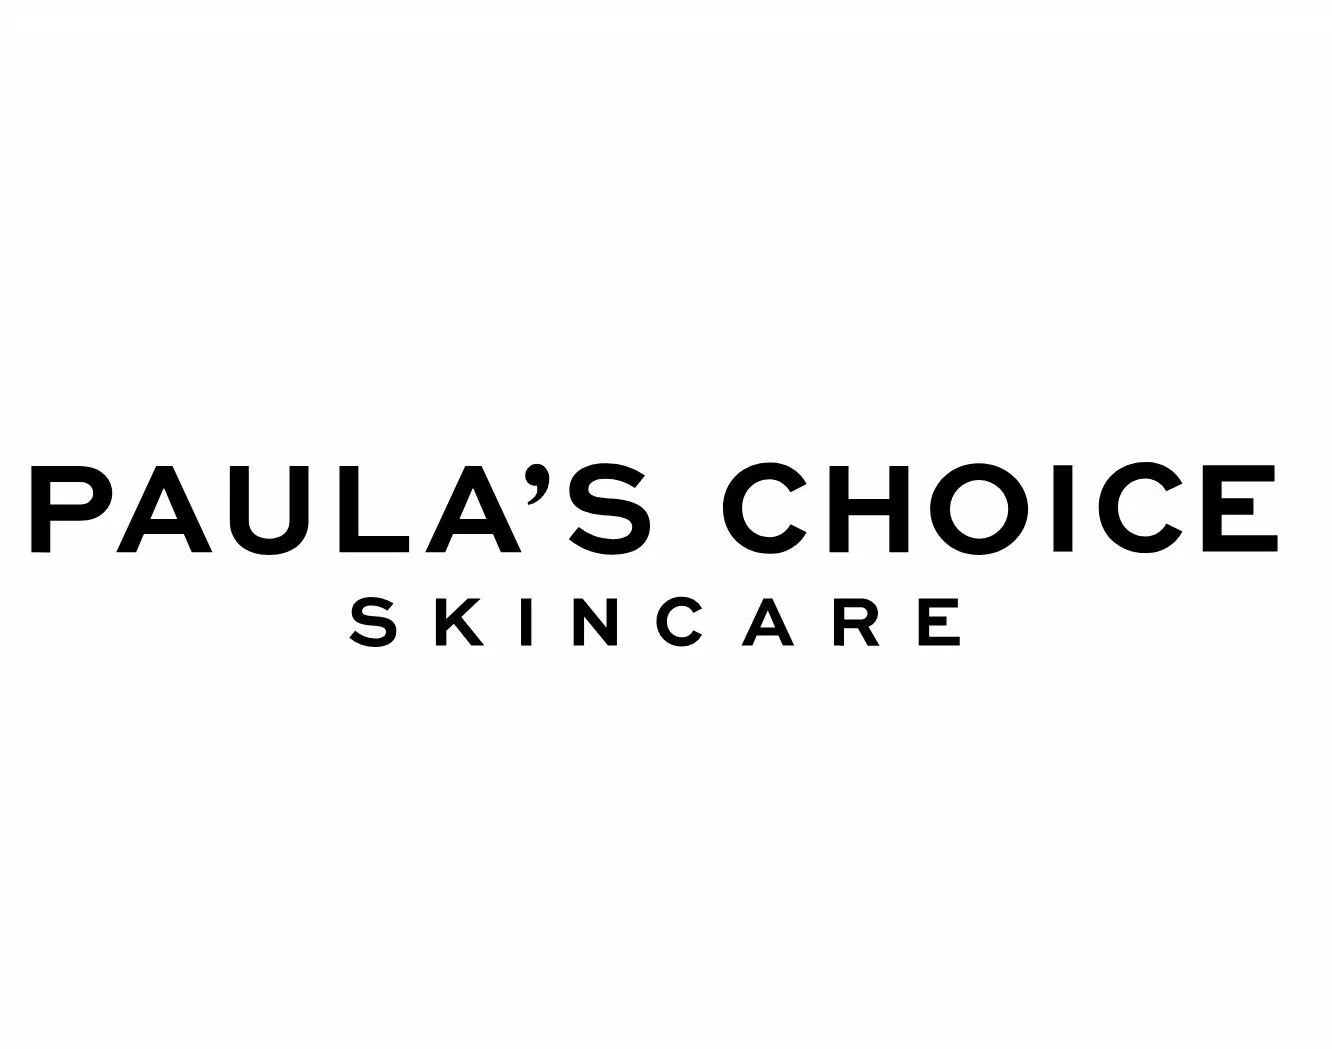 Paula’s Choice là thương hiệu dược mỹ phẩm nổi tiếng (Nguồn: Internet)